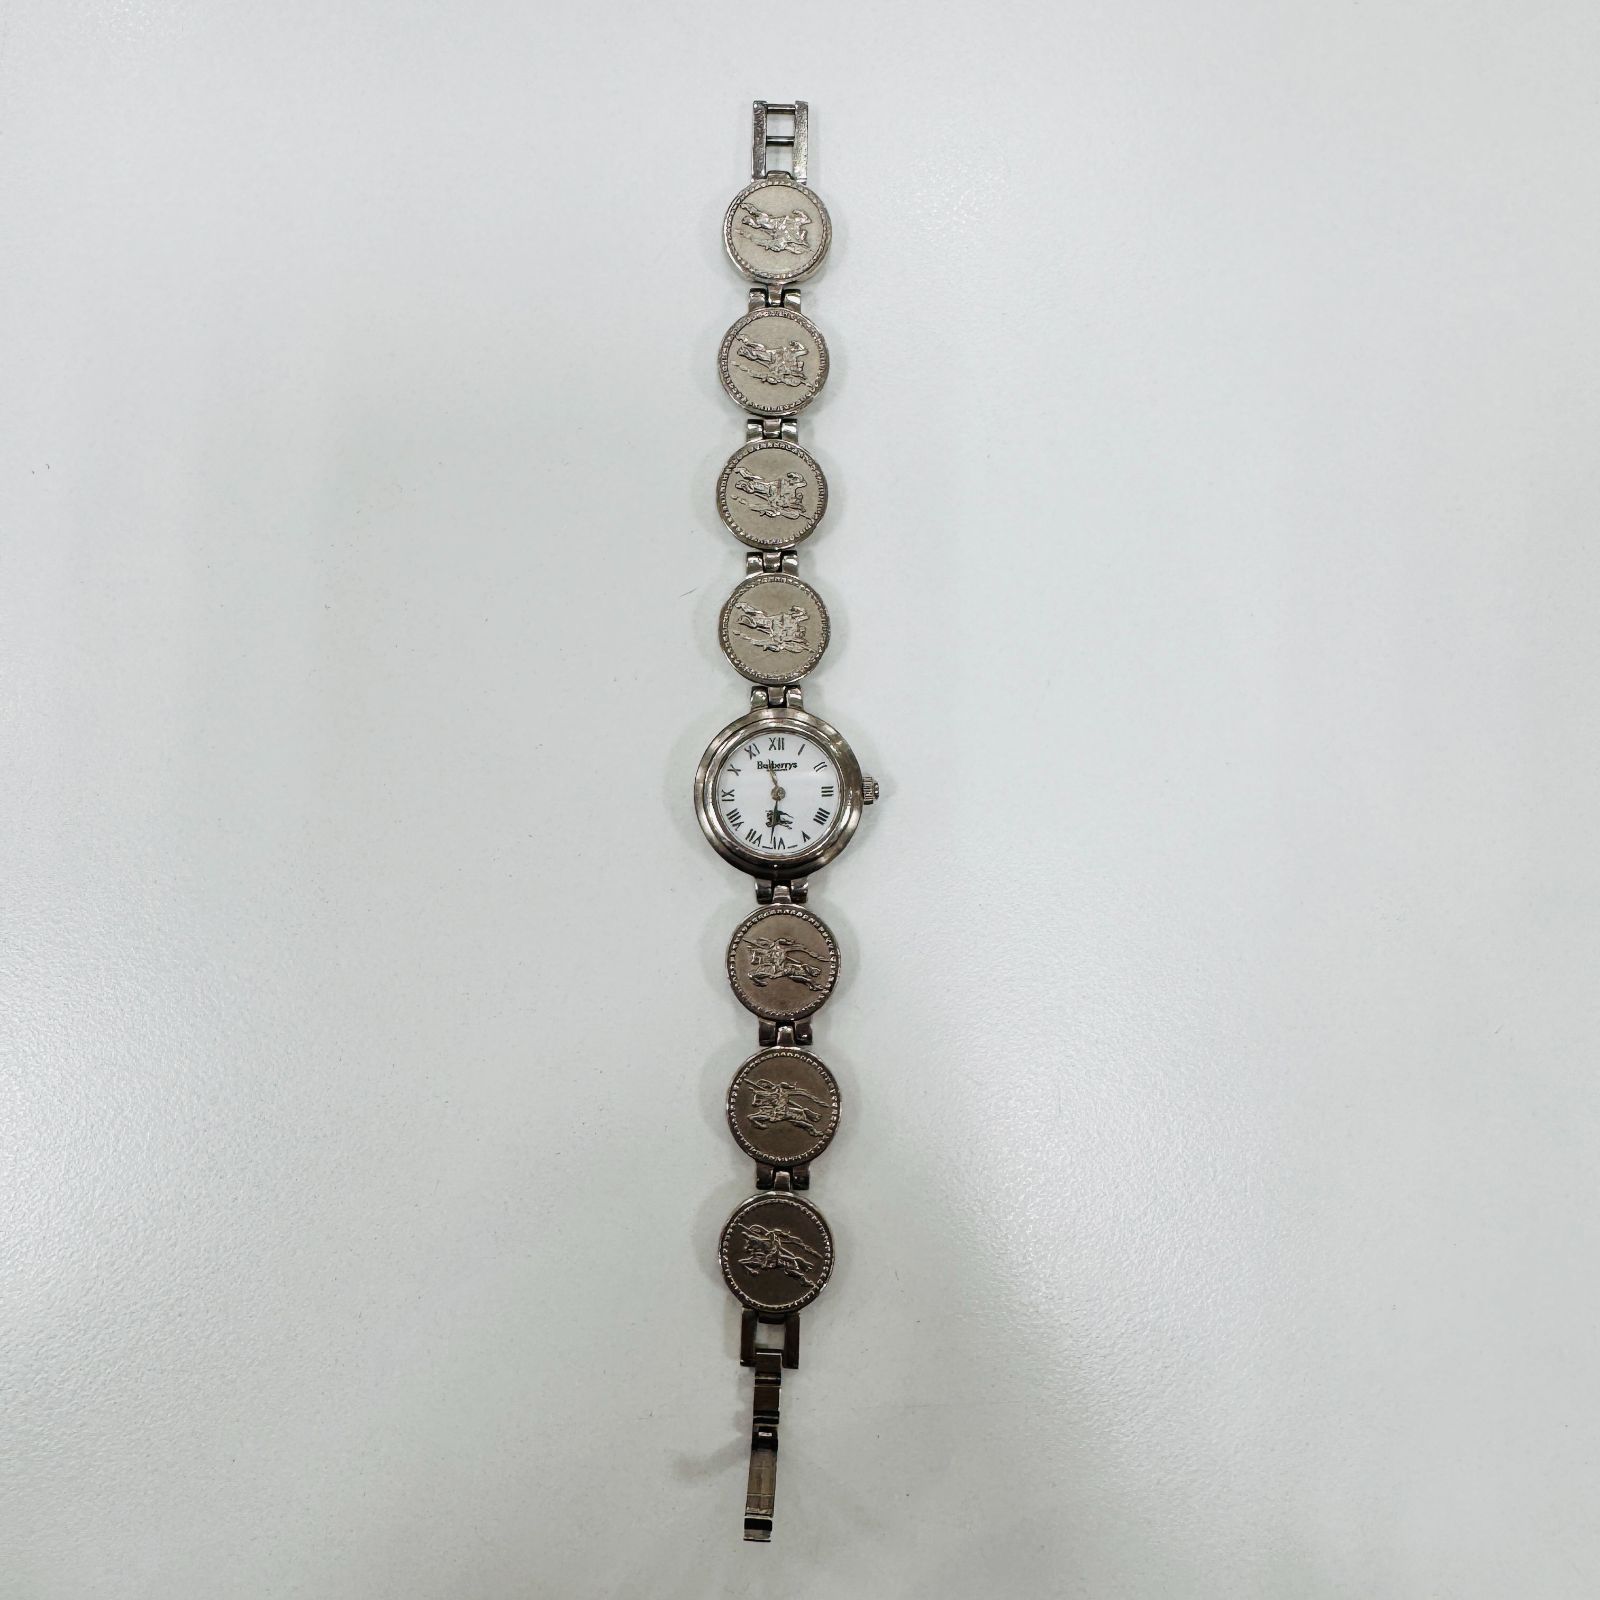 A【ヴィンテージ】Burberry バーバリー 腕時計 コインウォッチ 11100L 